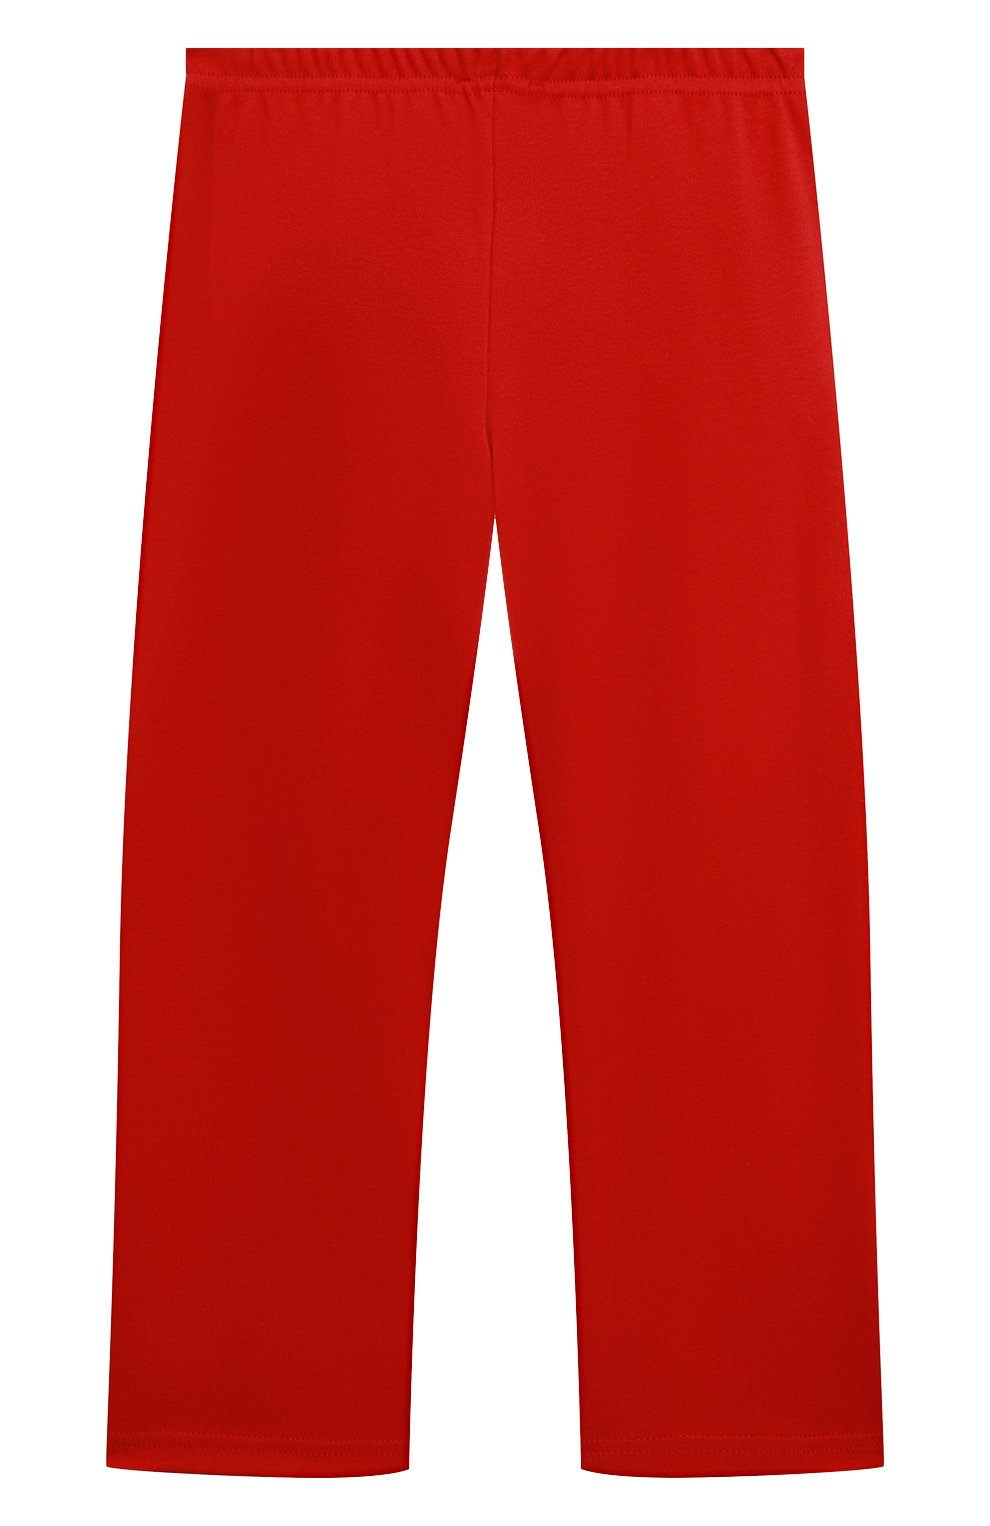 Детская хлопковая пижама LA PERLA красного цвета, арт. 54951/8A-14A | Фото 5 (Рукава: Длинные; Материал внешний: Хлопок)